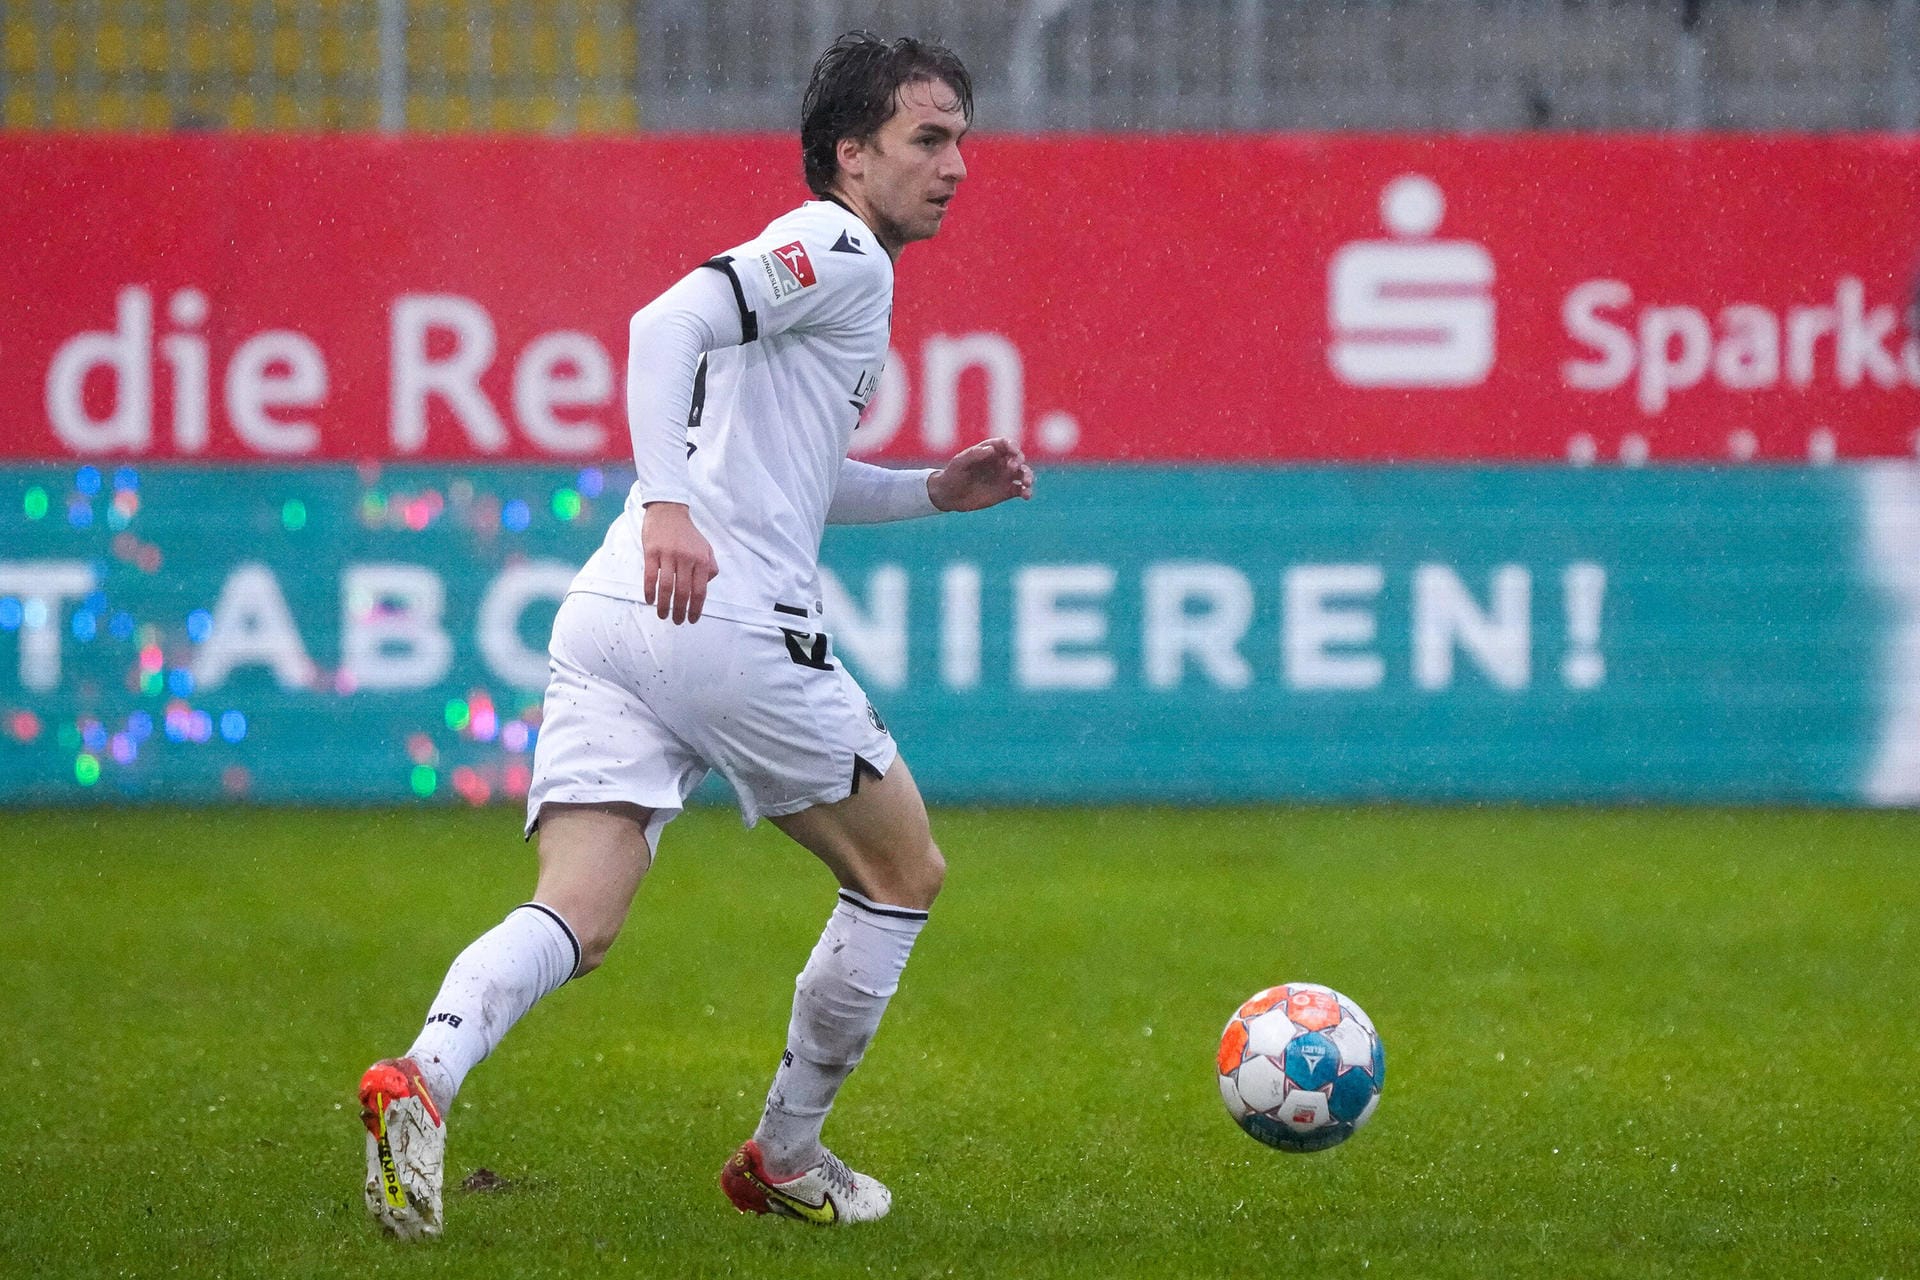 Eine noch längere Pause hat auch Gianluca Gaudino hinter sich. Der ehemalige Bayern-Spieler machte drei Monate lang kein Spiel, kehrte am vergangenen Wochenende gegen Paderborn erstmals zurück in den Kader, spielte drei Minuten.